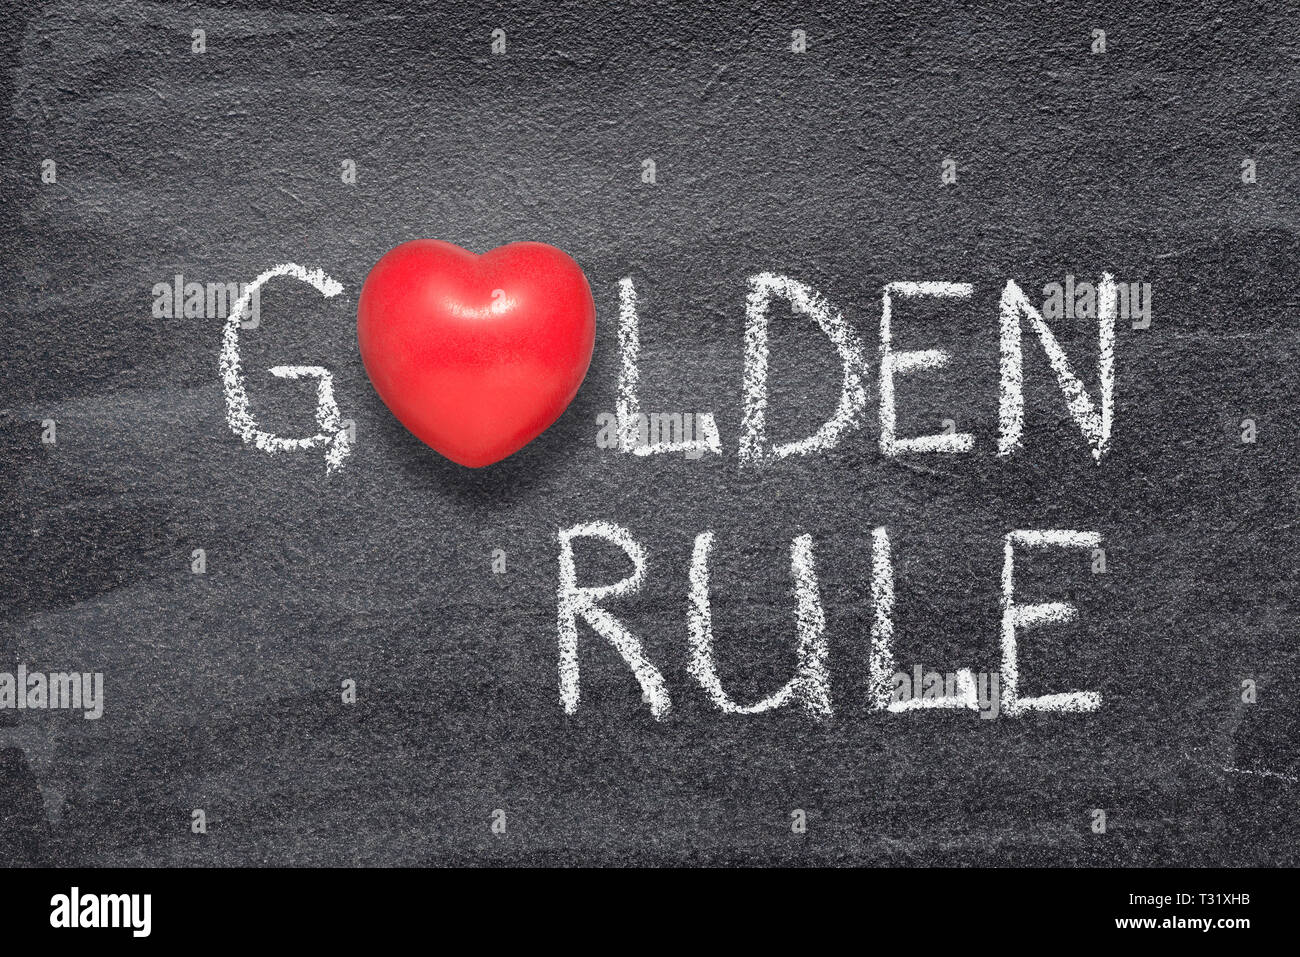 Goldene Regel Phrase handgeschrieben auf Schiefertafel mit roten Herzen Symbol anstelle von O Stockfoto